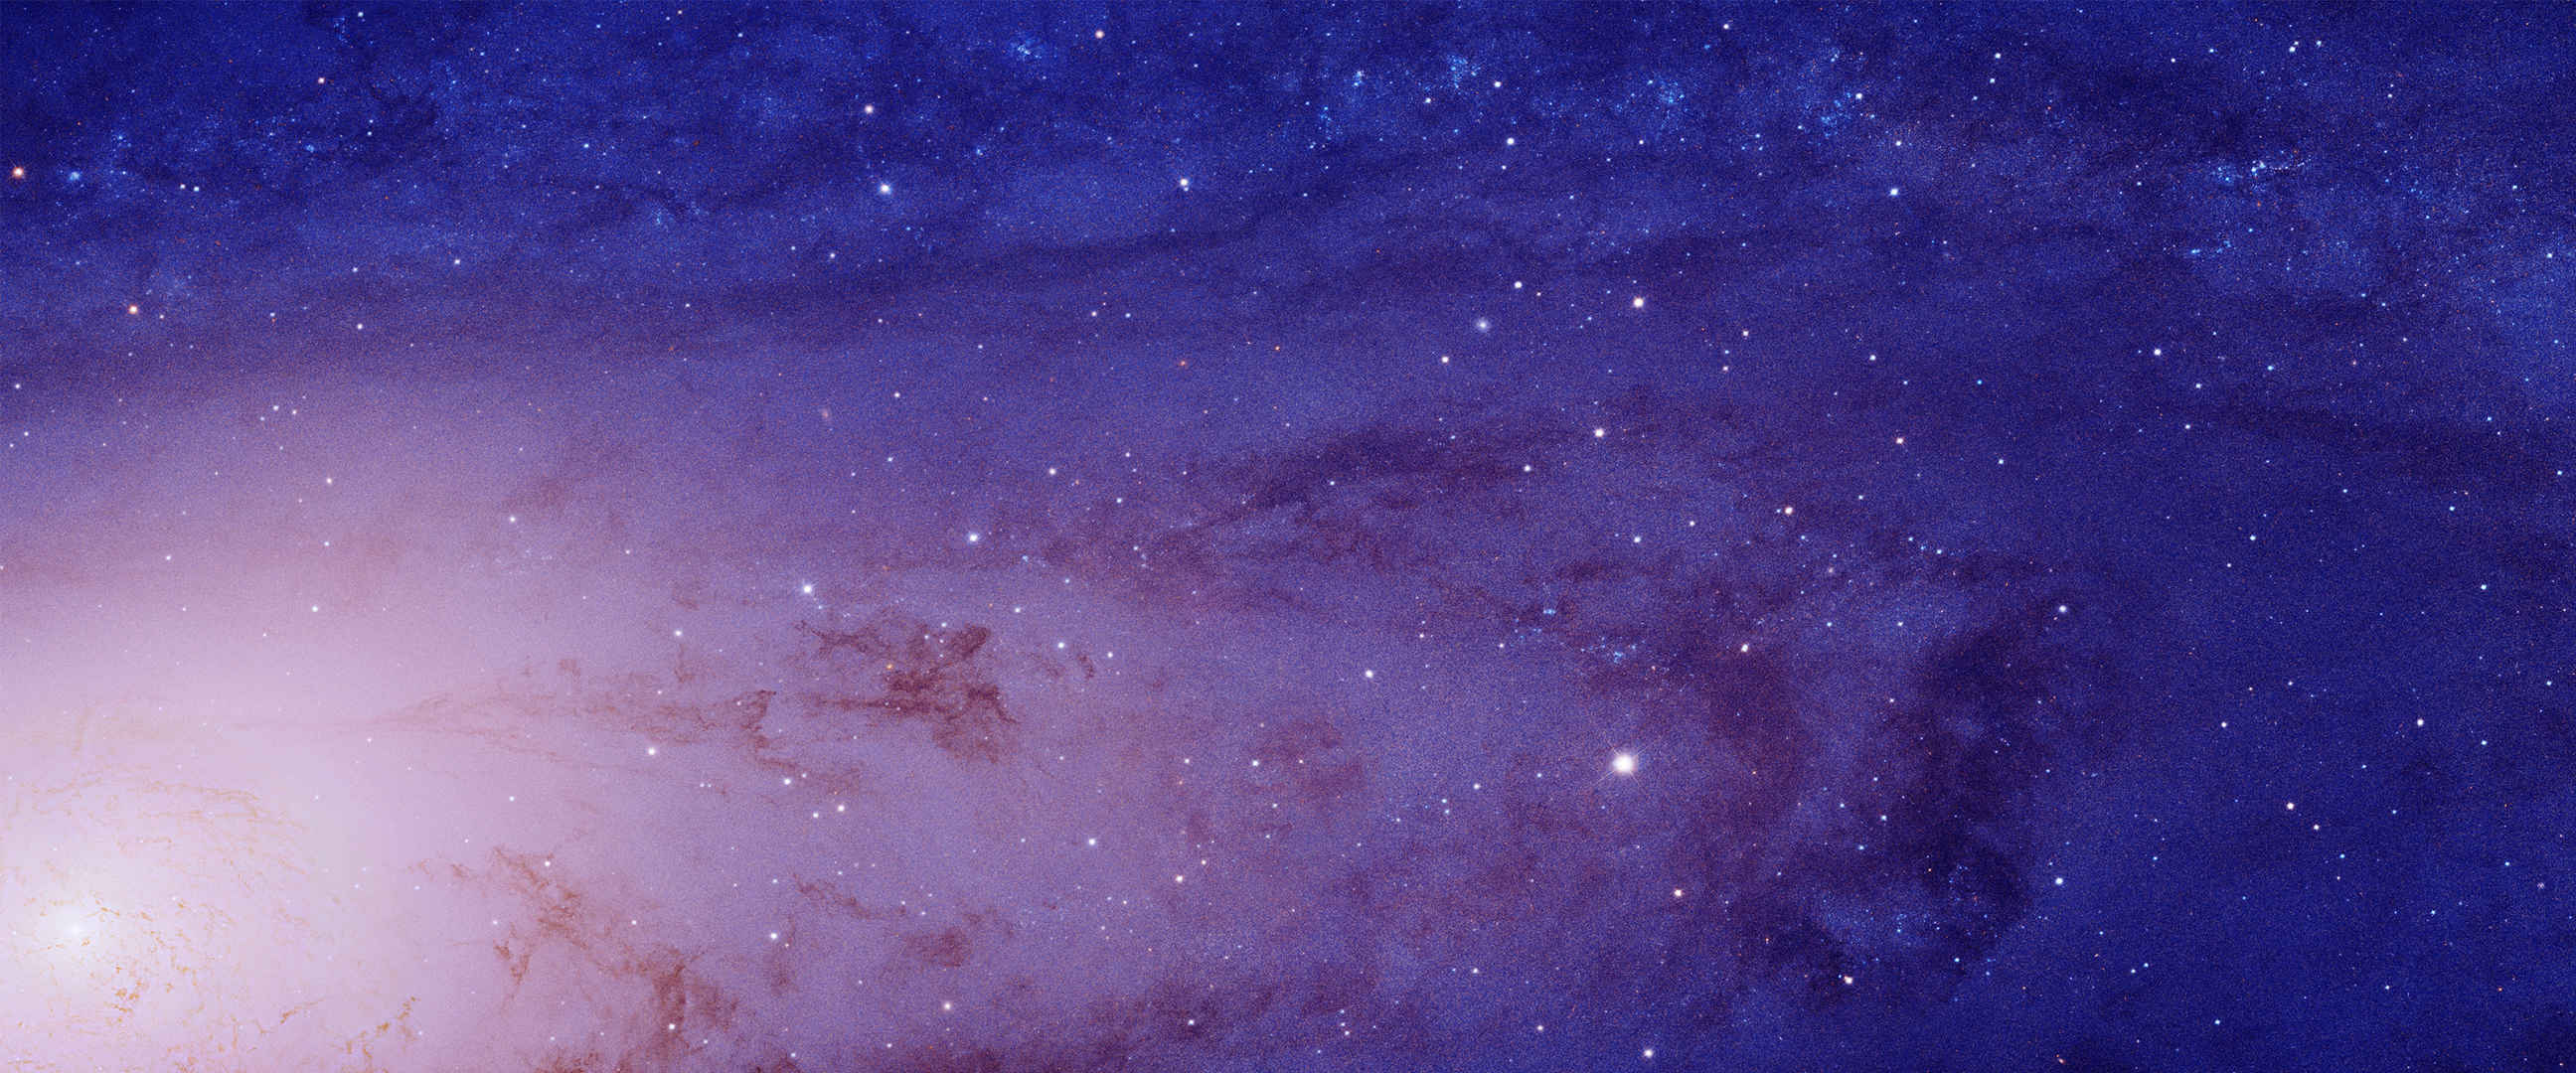 紫色繁星天空图片-